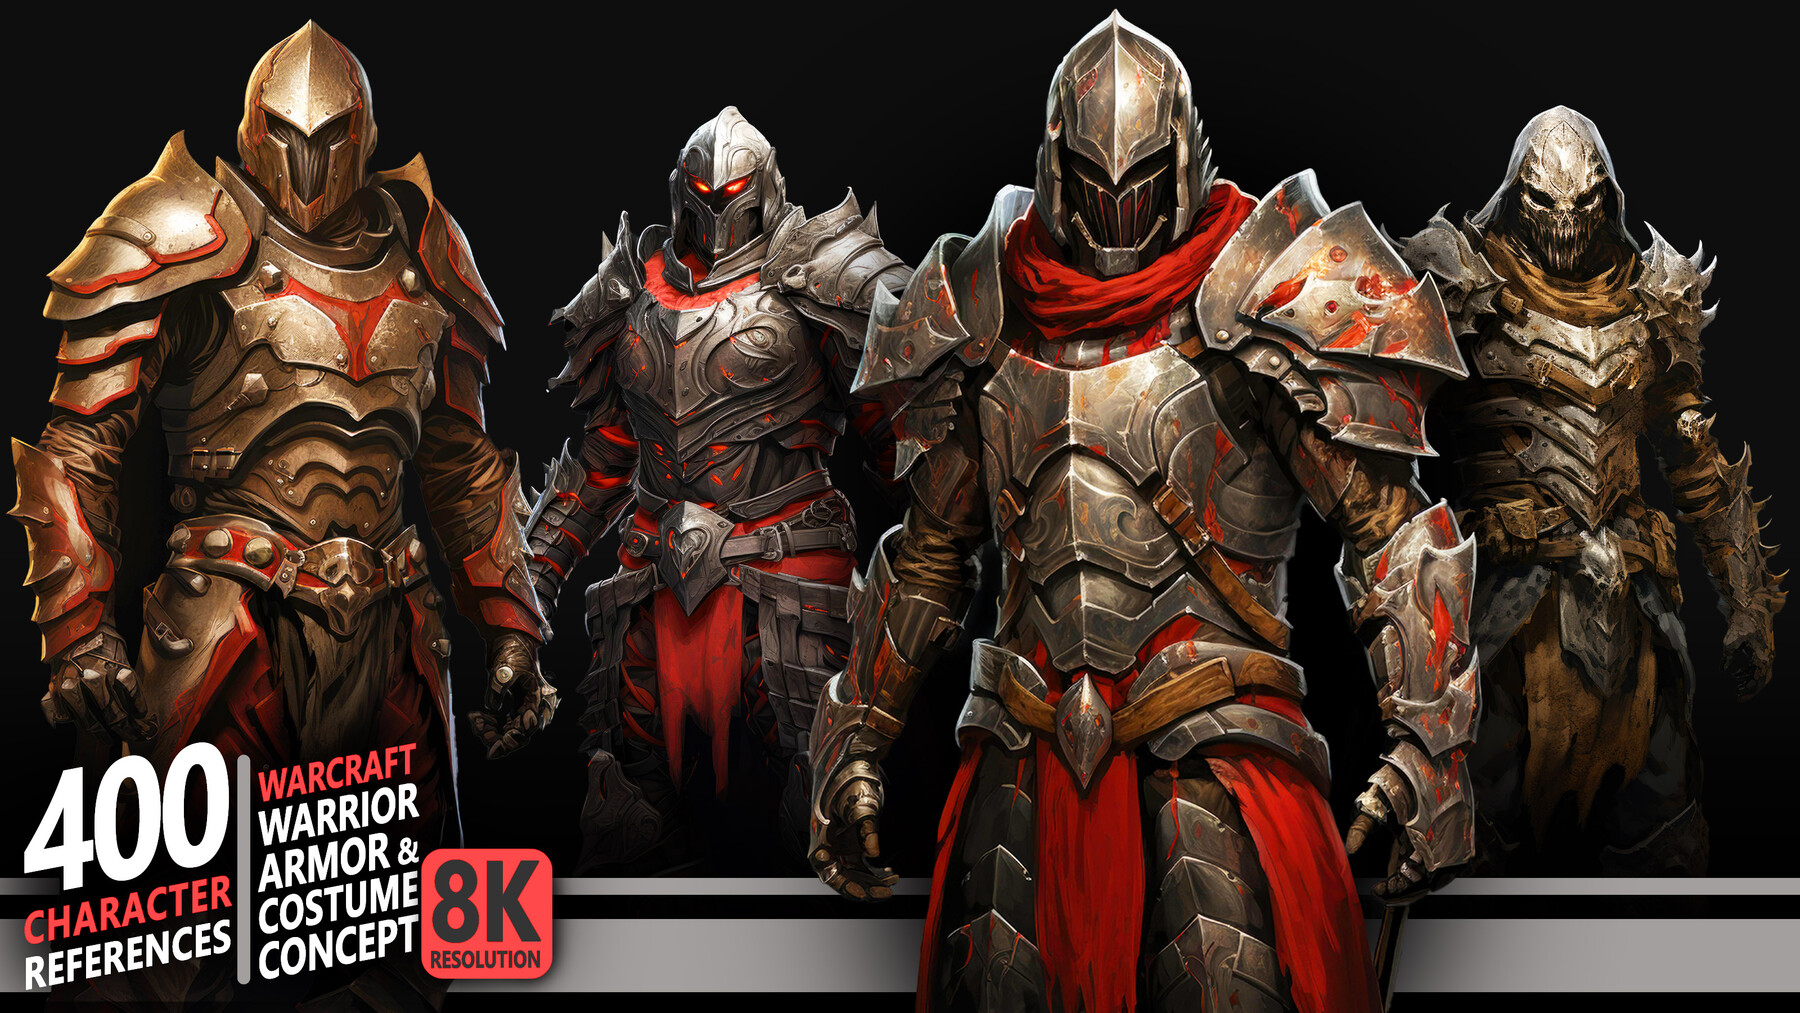 ArtStation - 400 Warcraft Warrior Armor & Costume Concept - Character ...